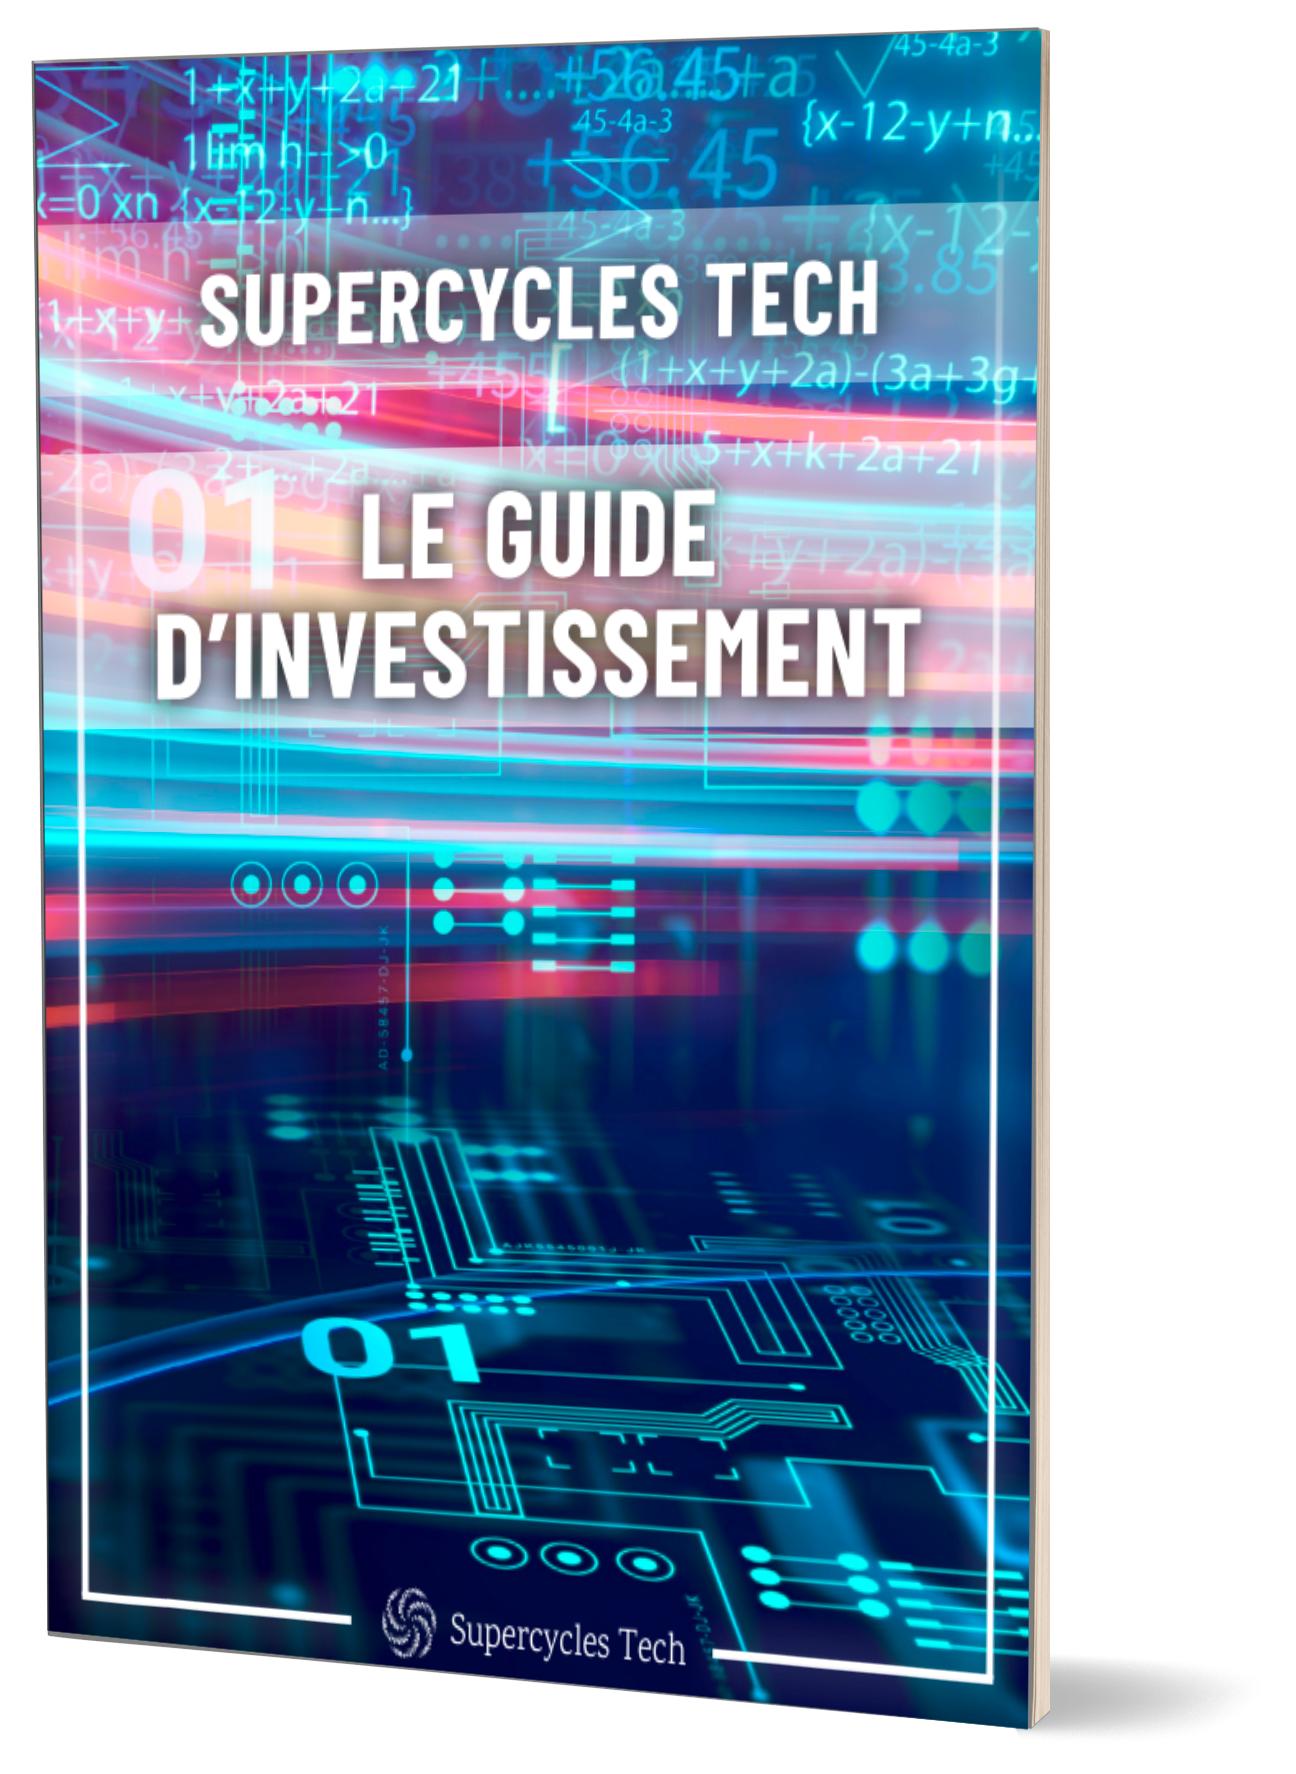 Le Guide d’investissement Supercycles Tech